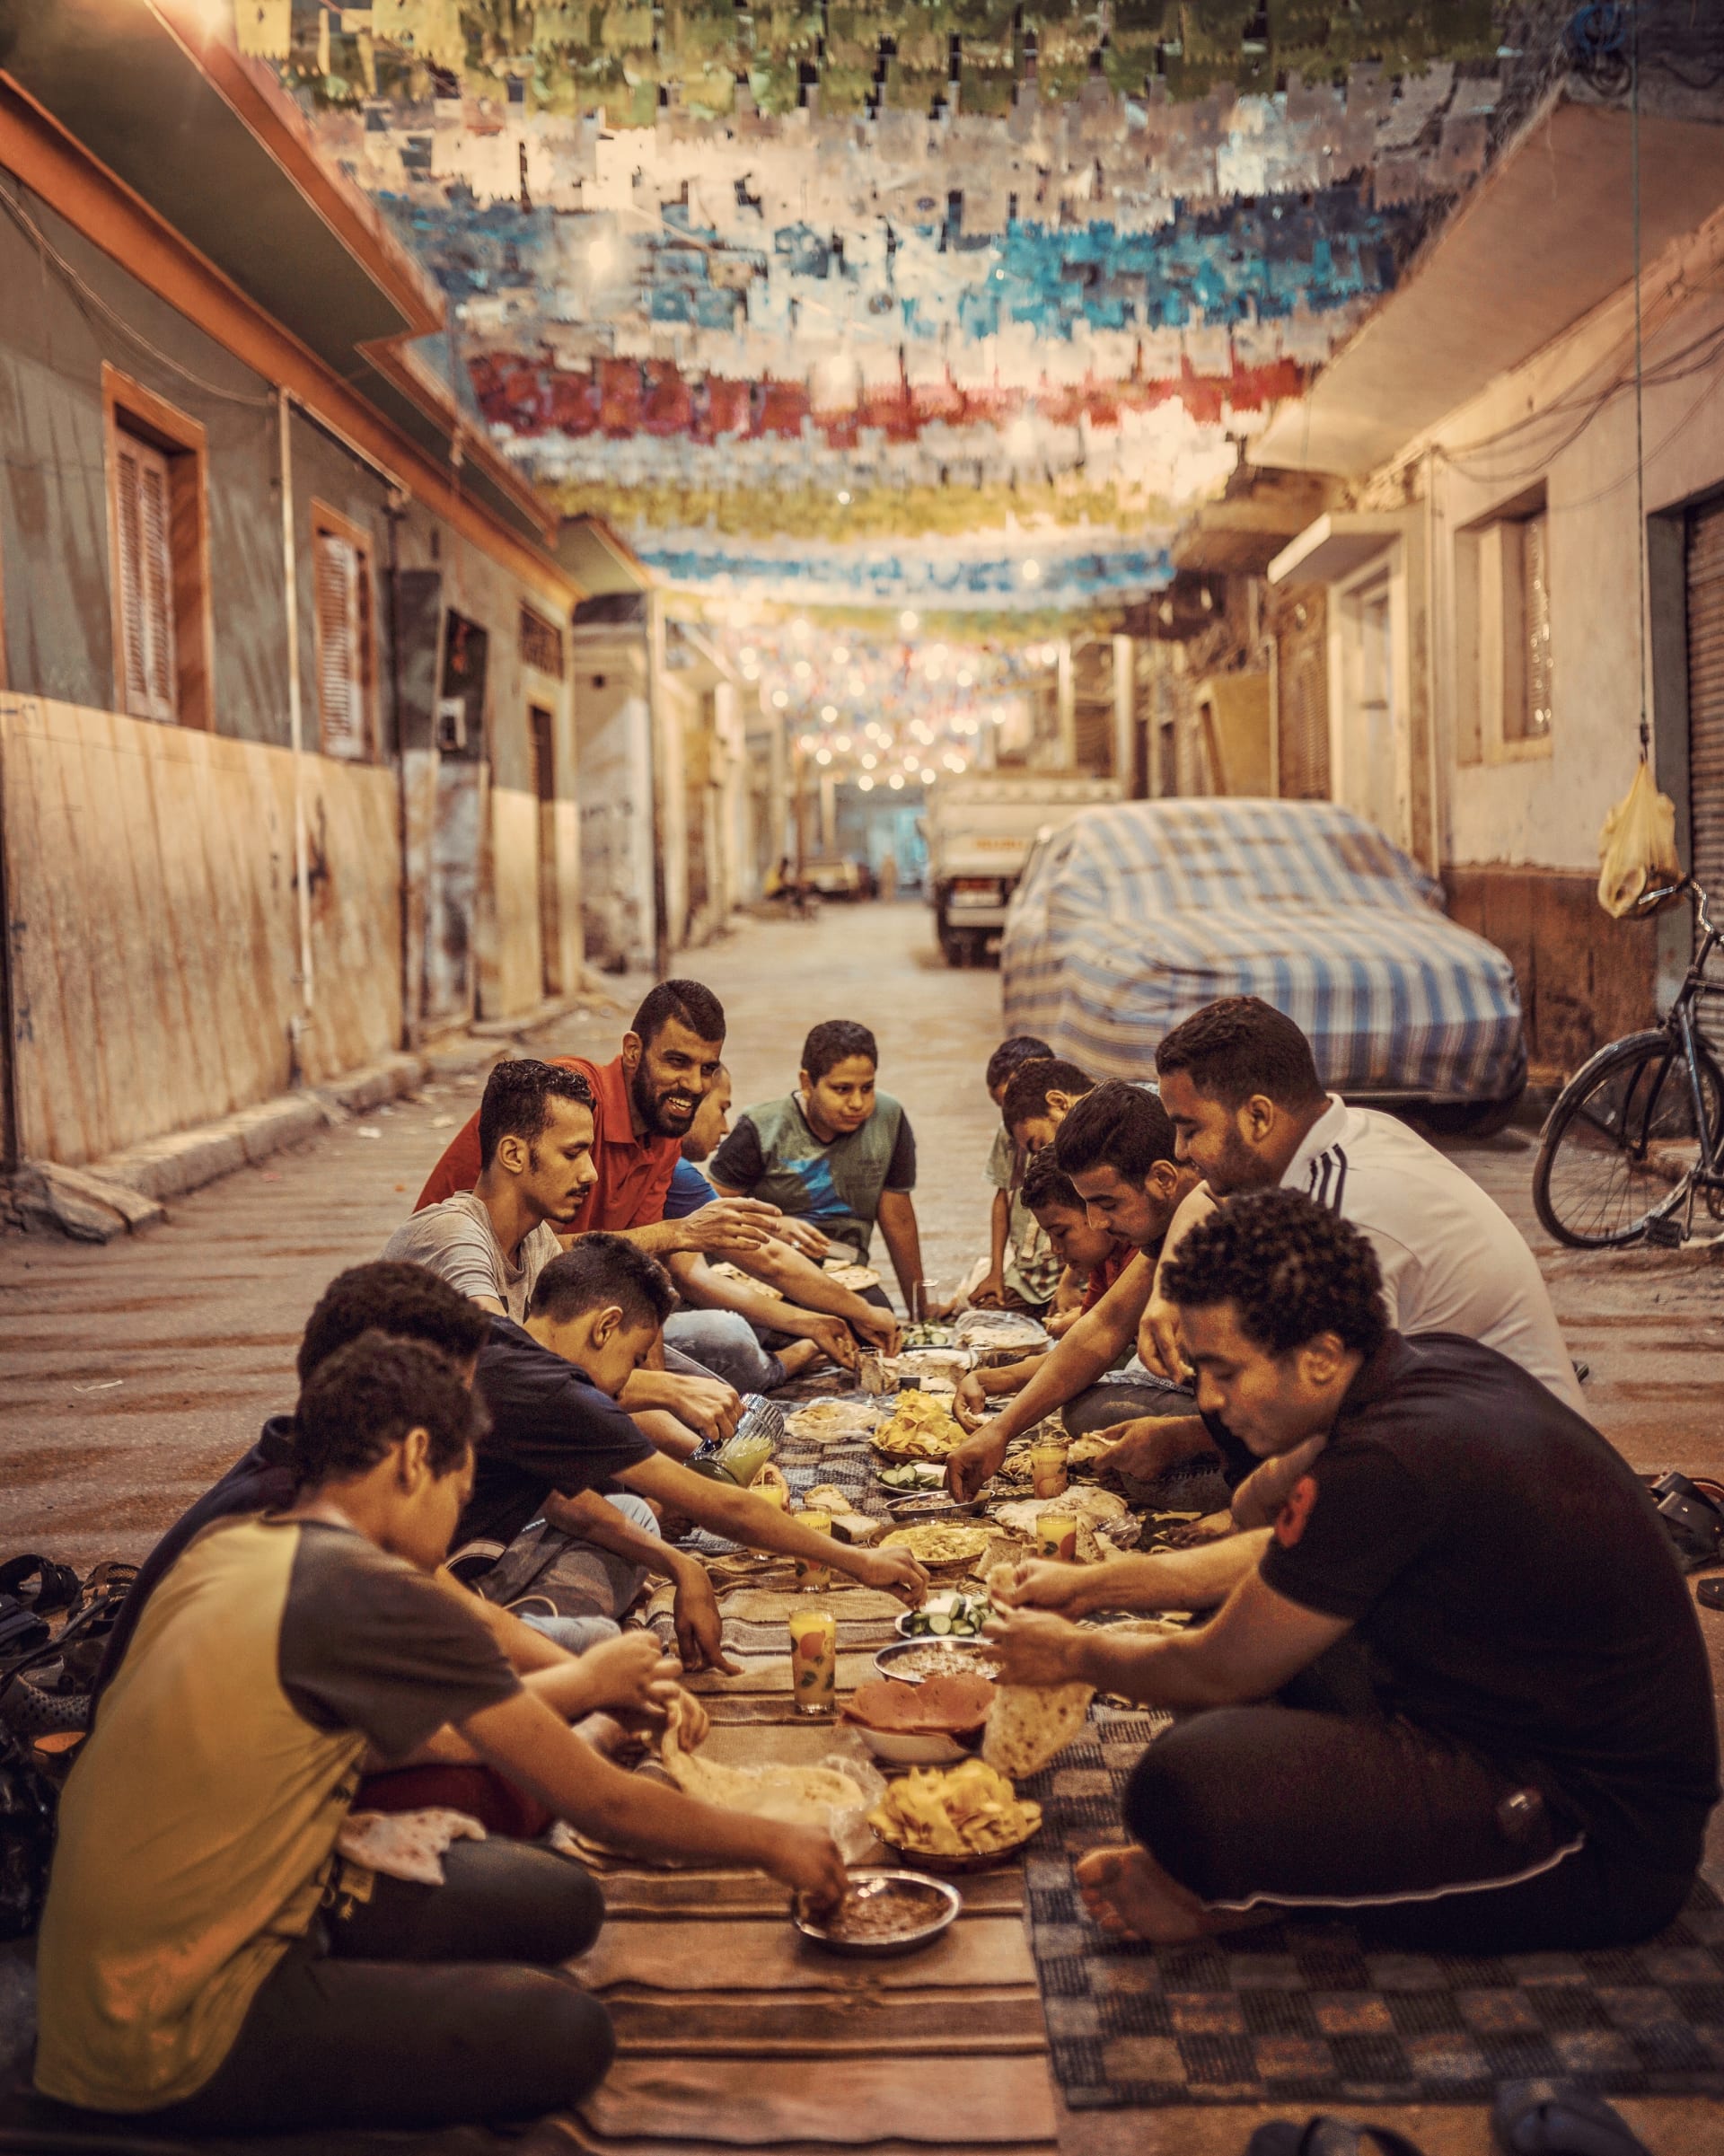 رمضان في مصر بزمن الكورونا